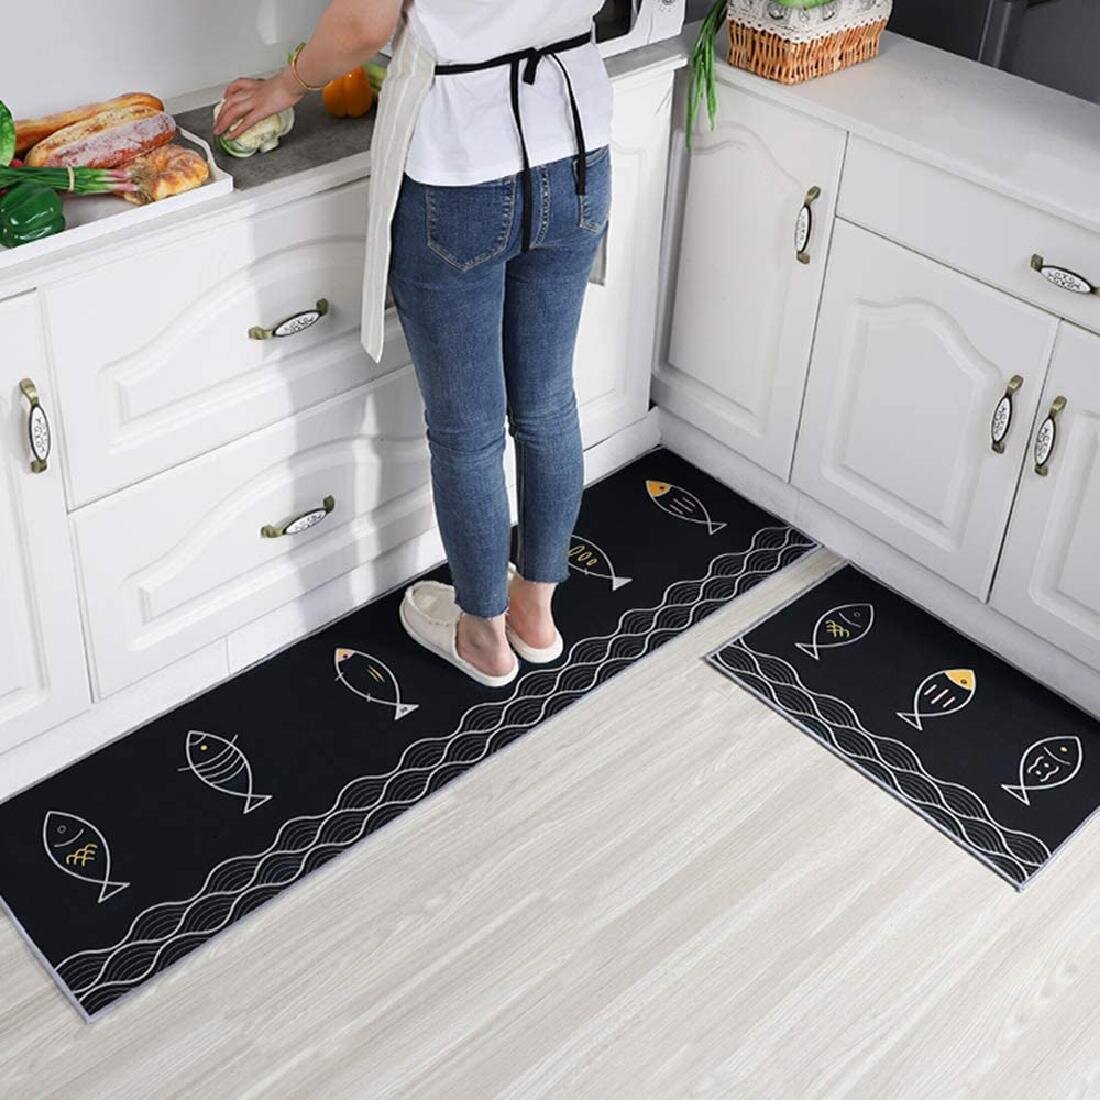 2 Pcs/Set Bedroom Kitchen Floor Mat Non Slip Runner Anti Fatigue Rug Doormat US 